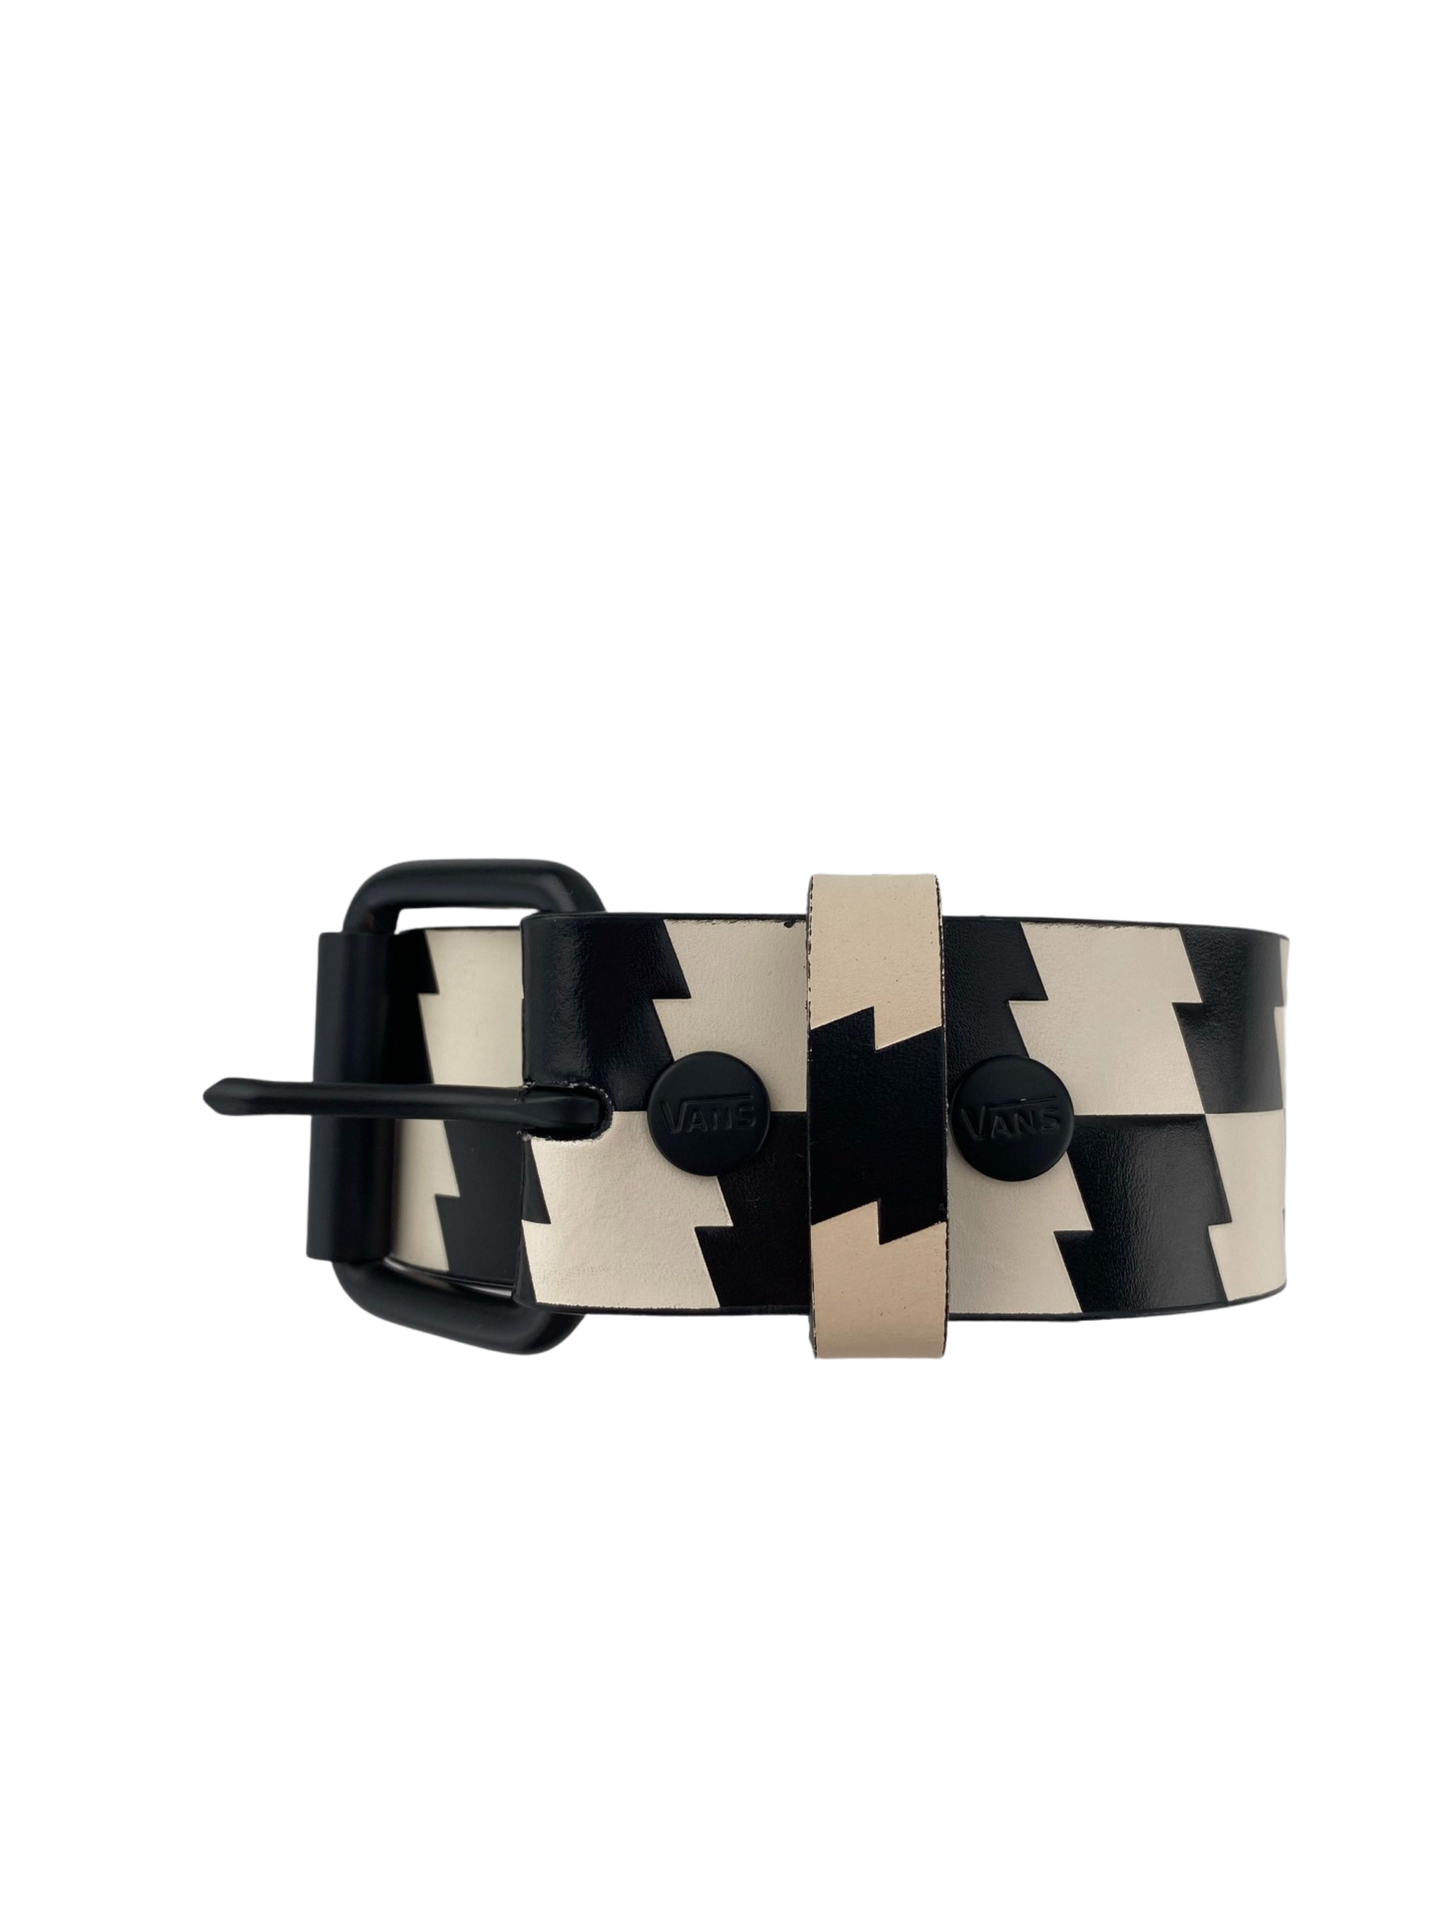 Stylischer Gürtel von Vans. Details: Schwarz/weißes Zickzack-Muster ,Vans Belt „Zig Zag“ -black/white